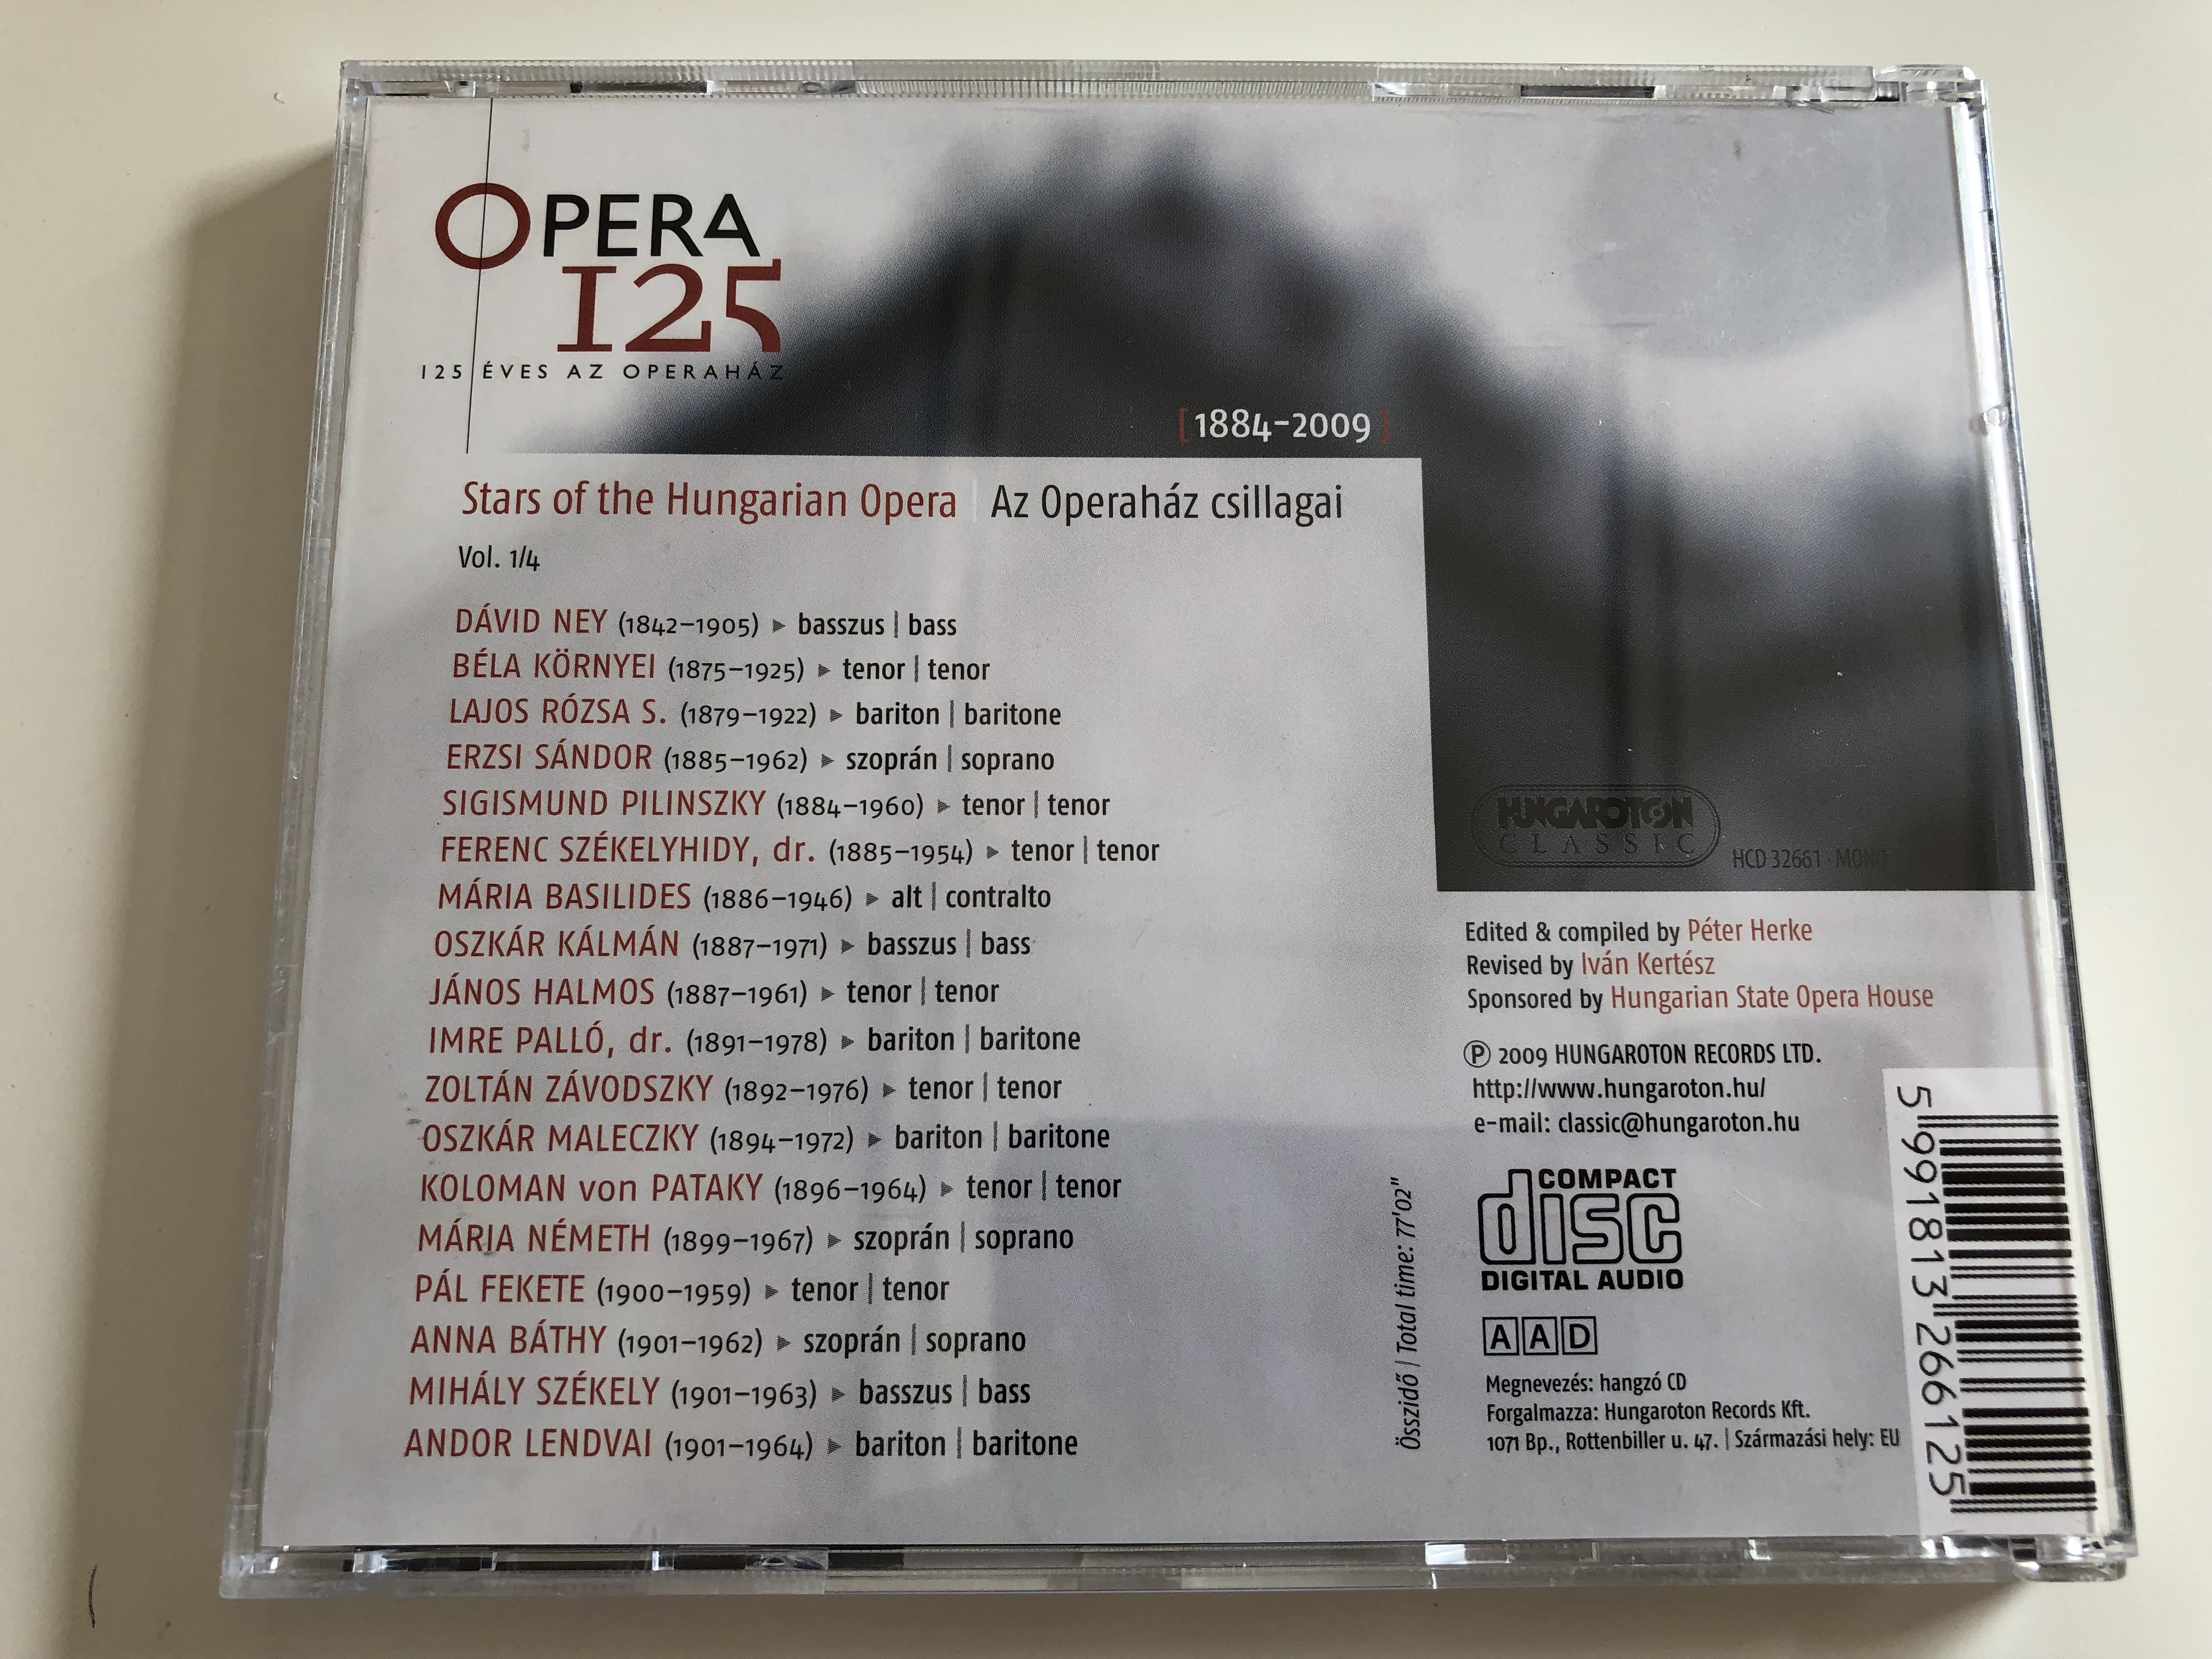 opera-125-125-ves-az-operah-z-125-years-of-the-hungarian-opera-house-1884-2009-stars-of-the-hungarian-opera-az-operah-z-csillagai-vol.-14-hungaroton-classic-hcd-32661-audio-cd-2009-12-.jpg